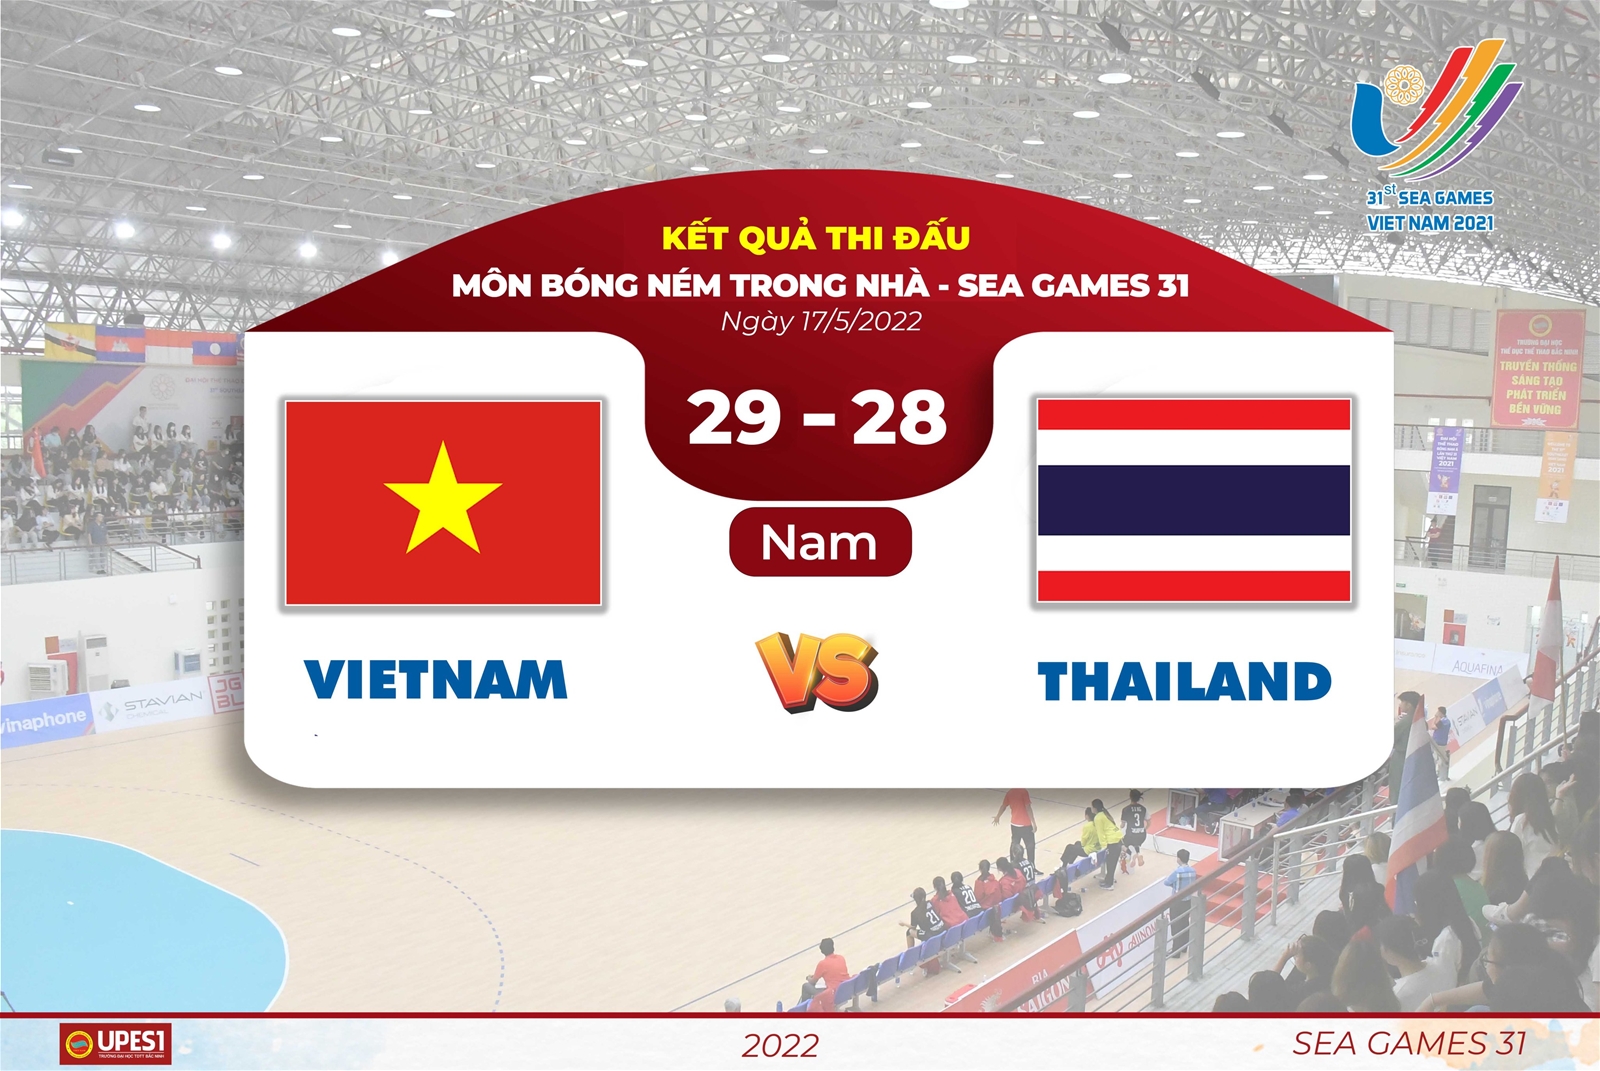 Bóng ném trong nhà nam, Việt Nam thắng Thái Lan với cách biệt tối thiểu